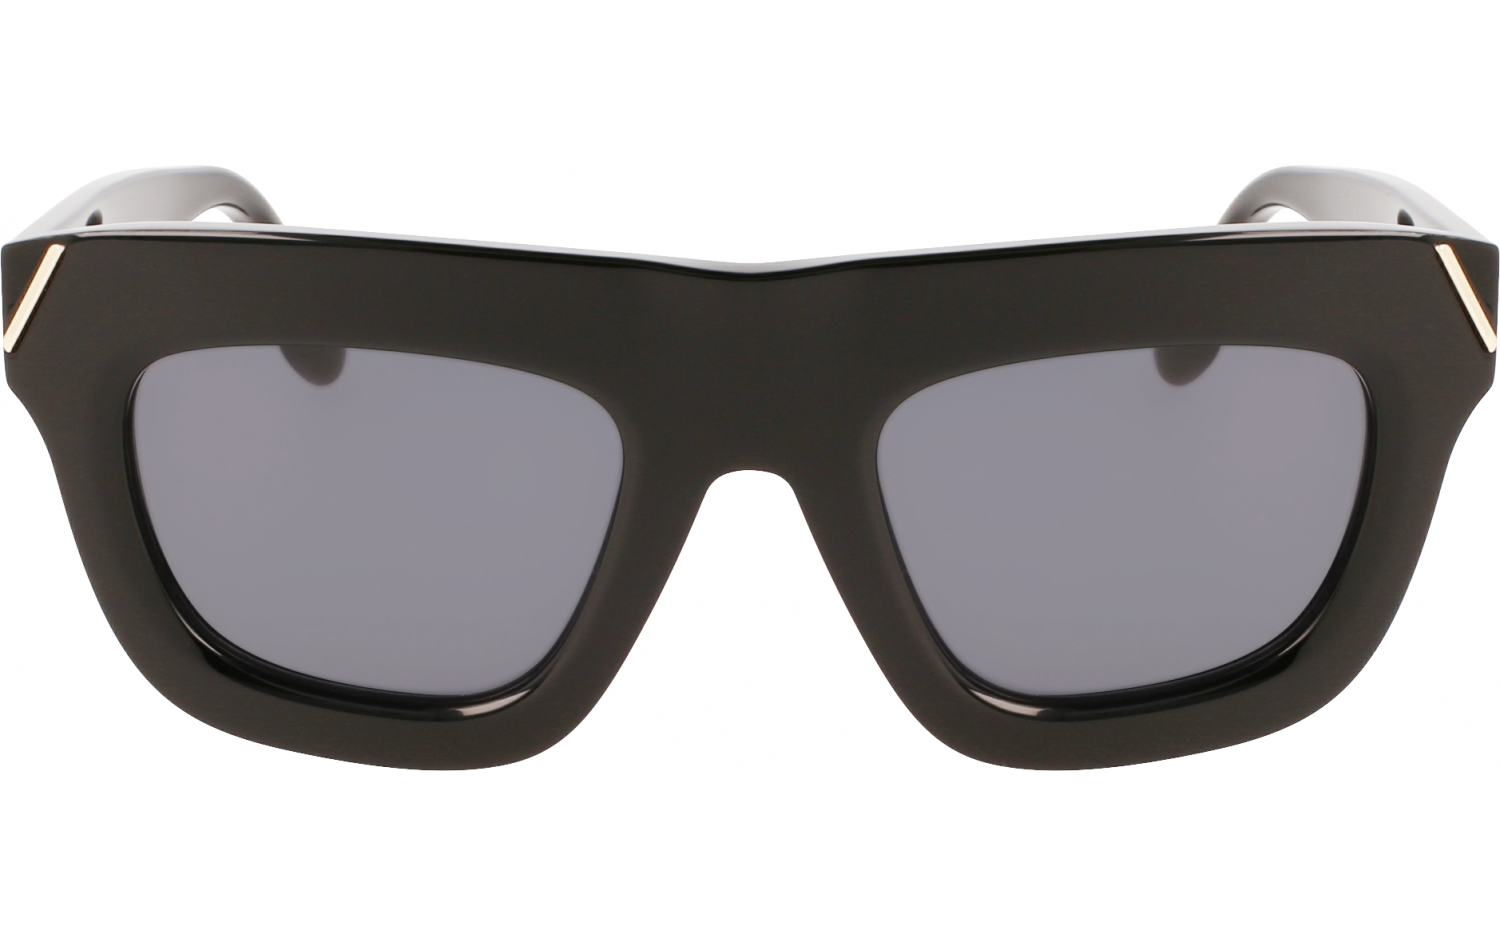 Victoria Beckham Mini Visor Sunglasses in Black-Green